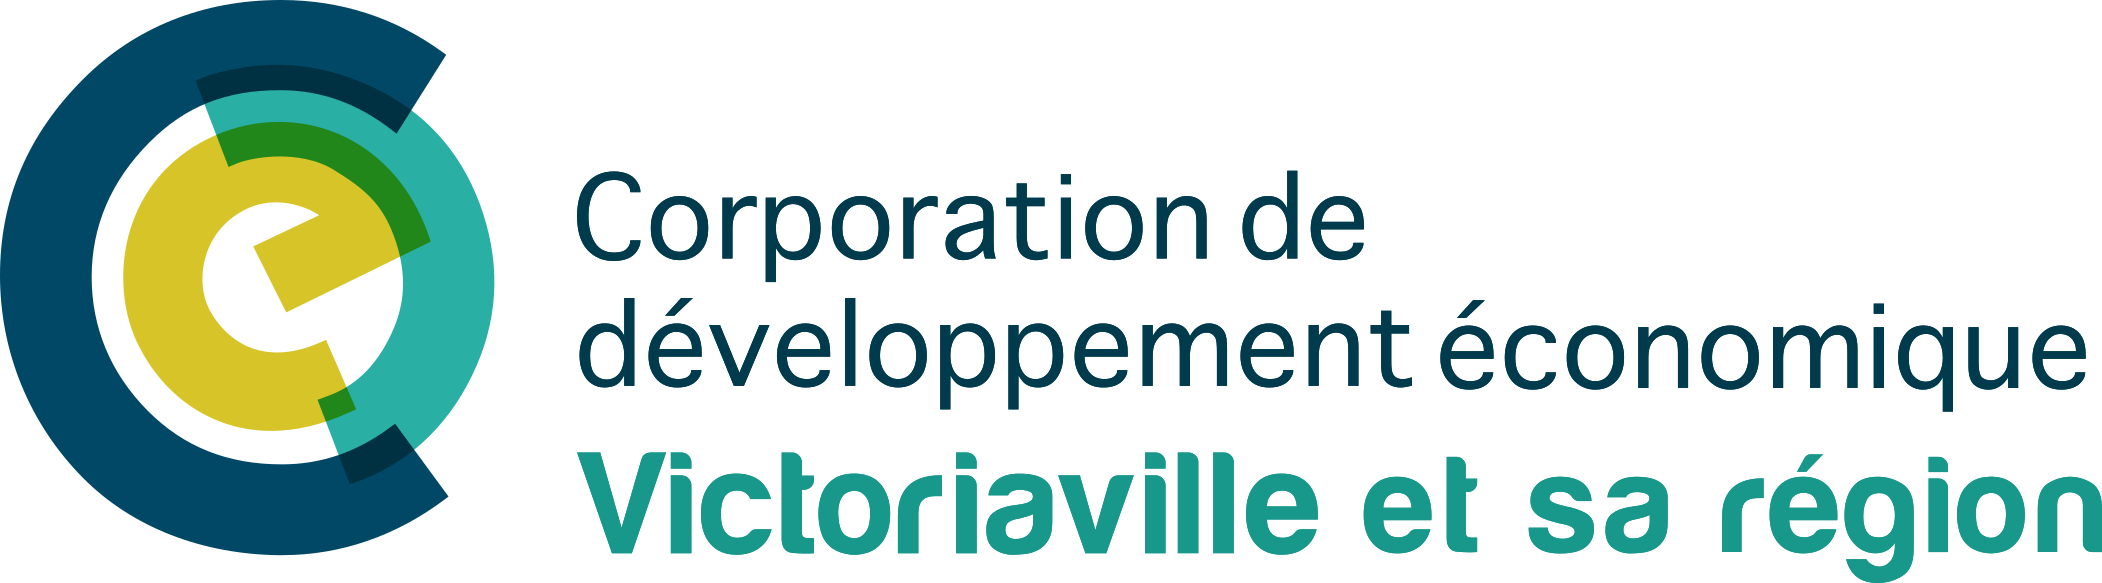 Corporation de développement économique de Victoriaville et sa région (CDEVR)